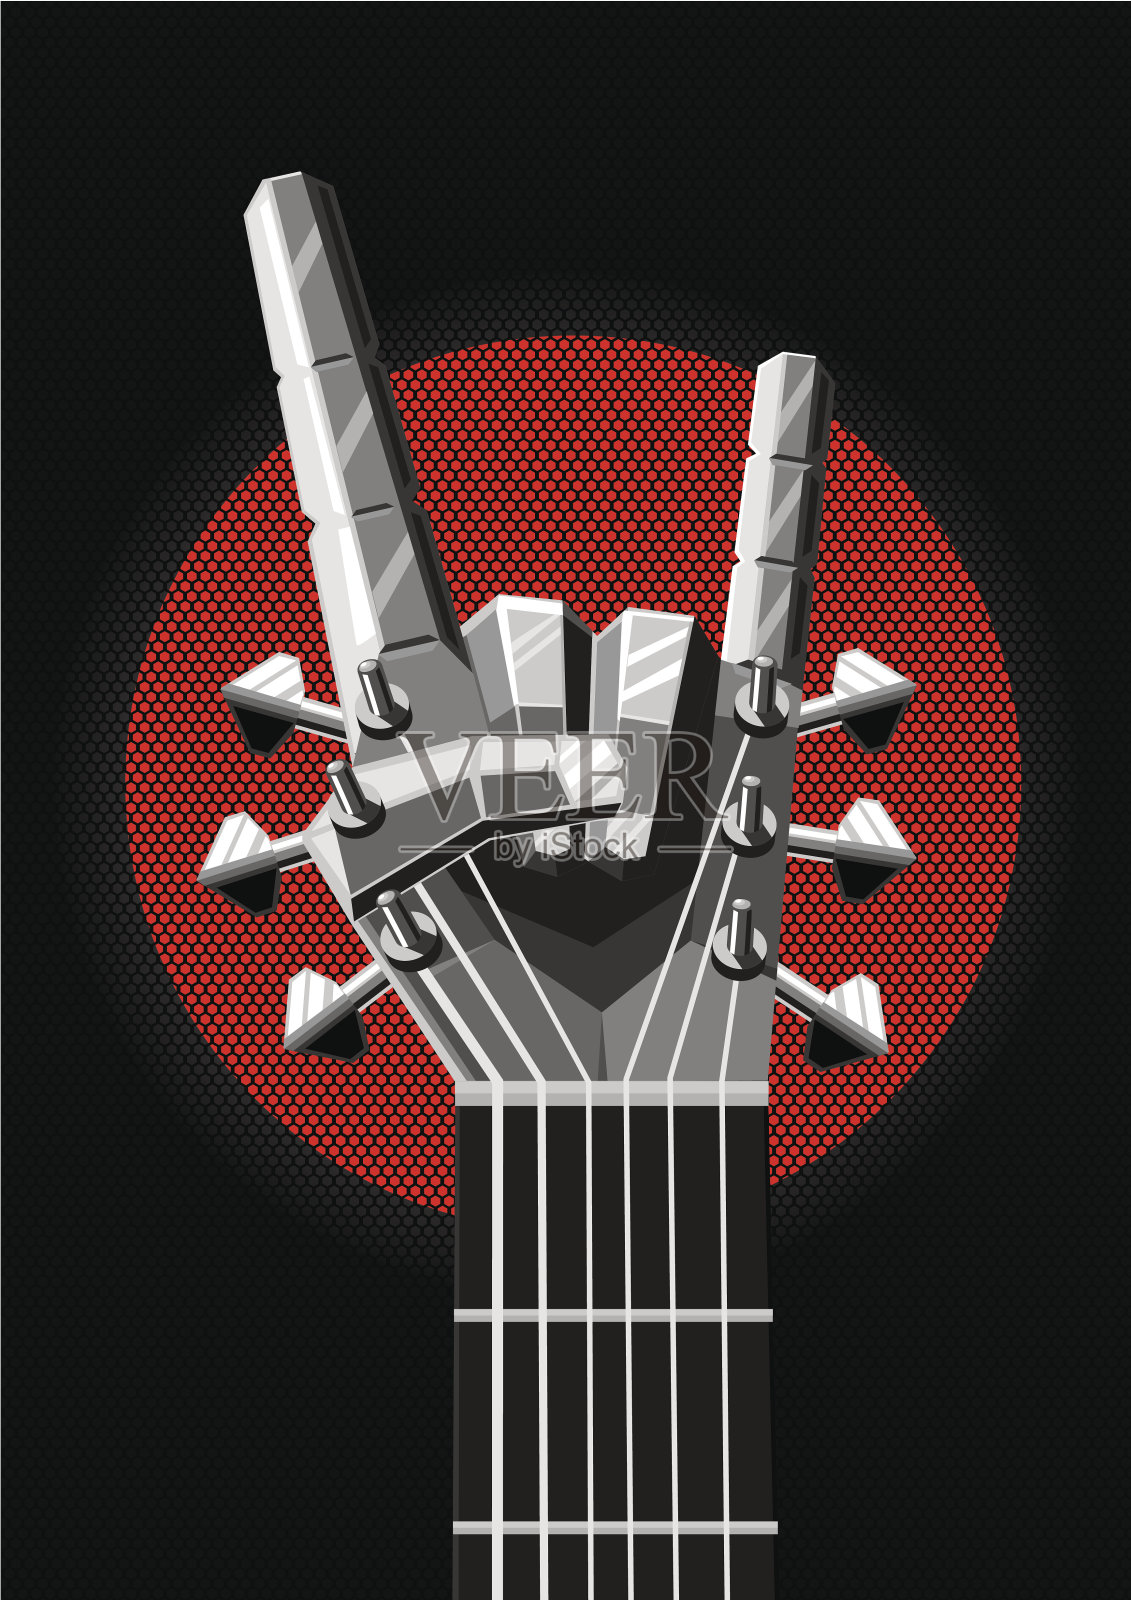 有金属手和吉他的摇滚海报。音乐的诠释设计模板素材